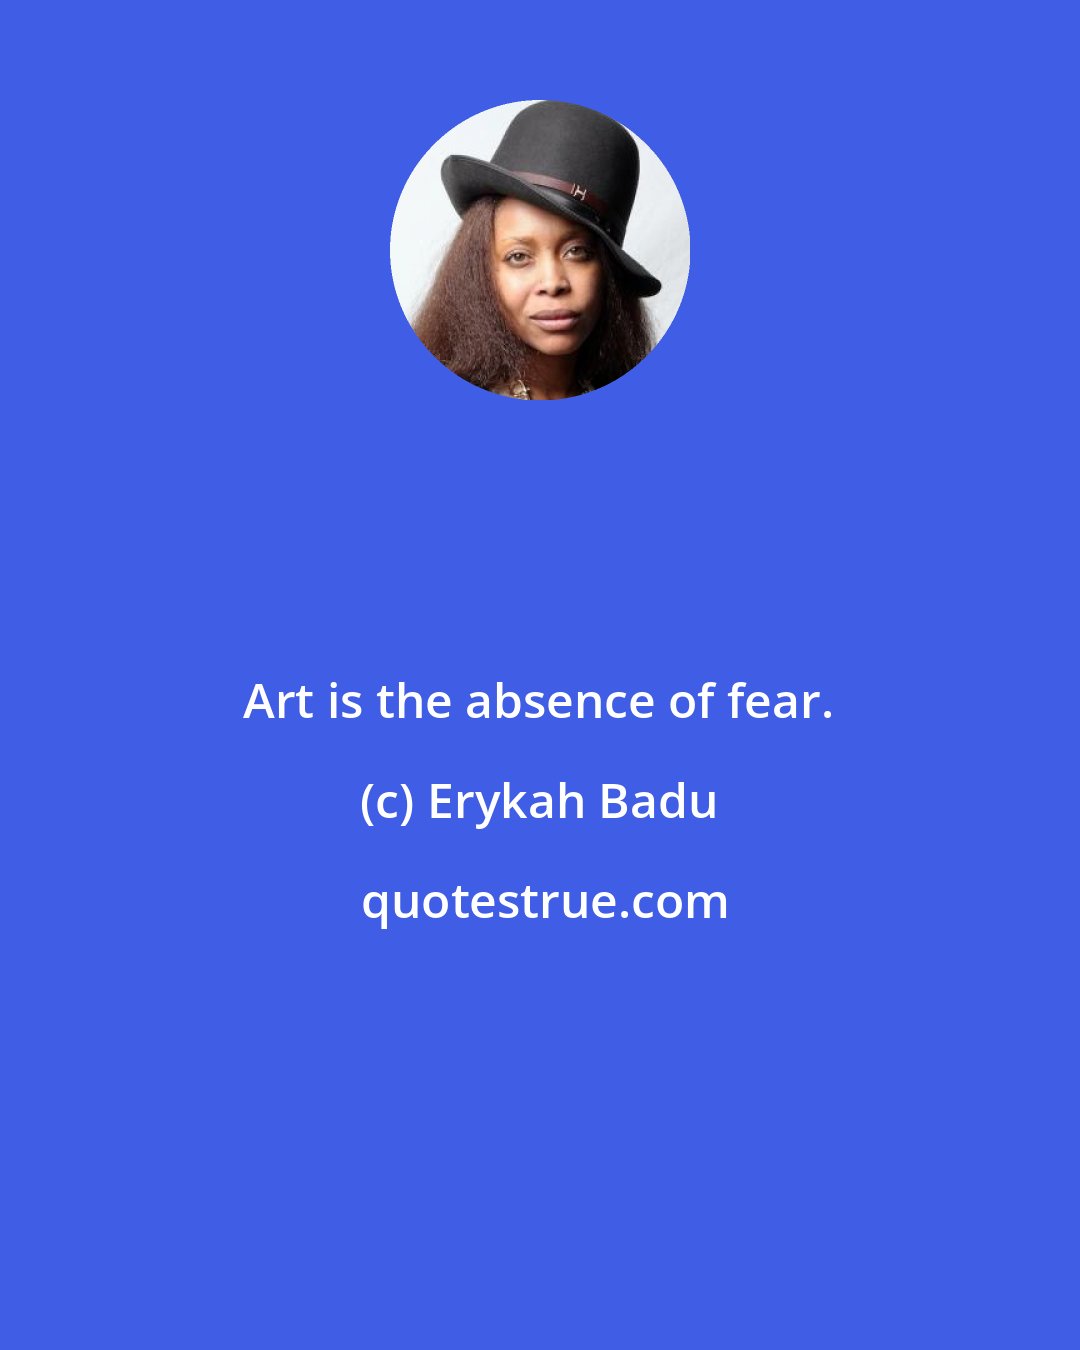 Erykah Badu: Art is the absence of fear.